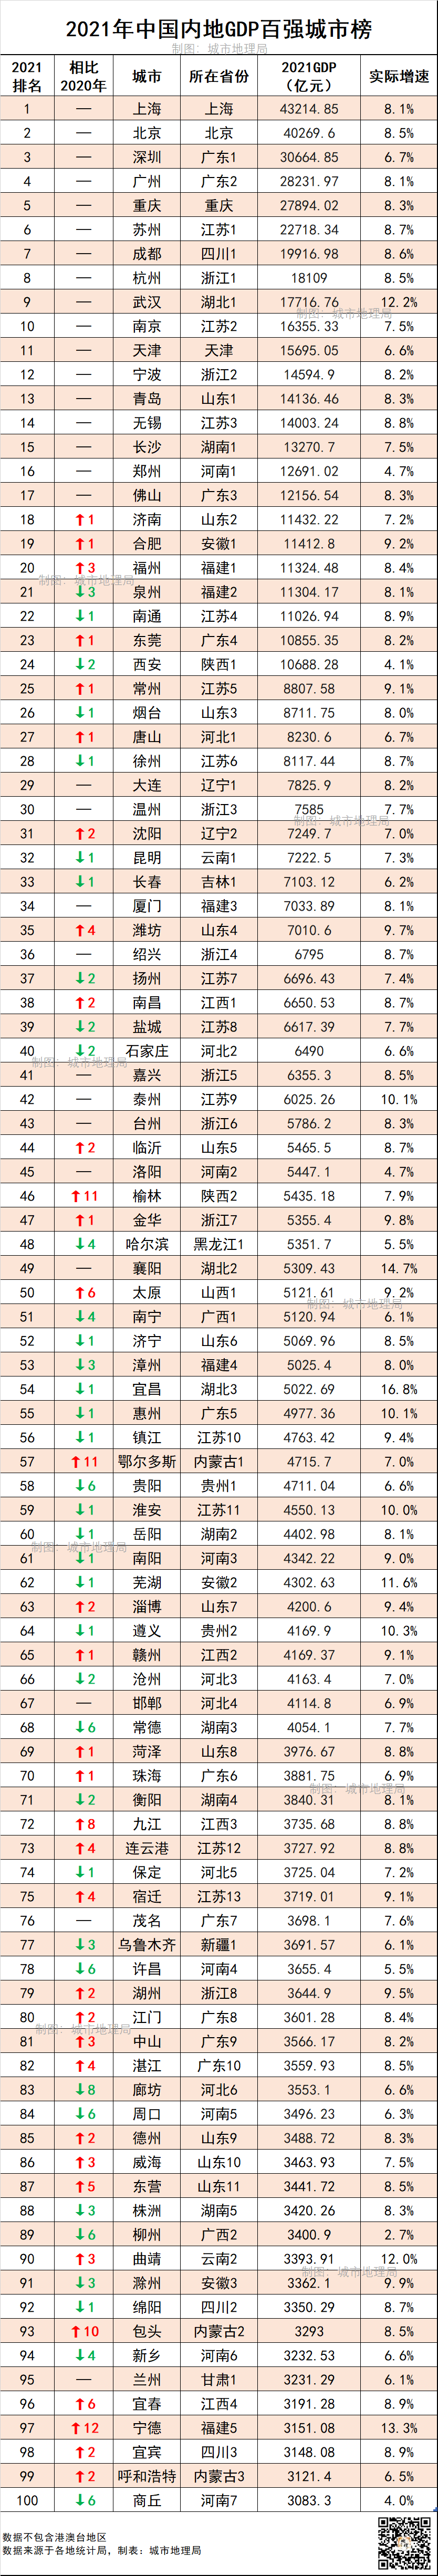 中国城市gdp排行榜_最新中国城市GDP百强榜:“万亿级”增至24座